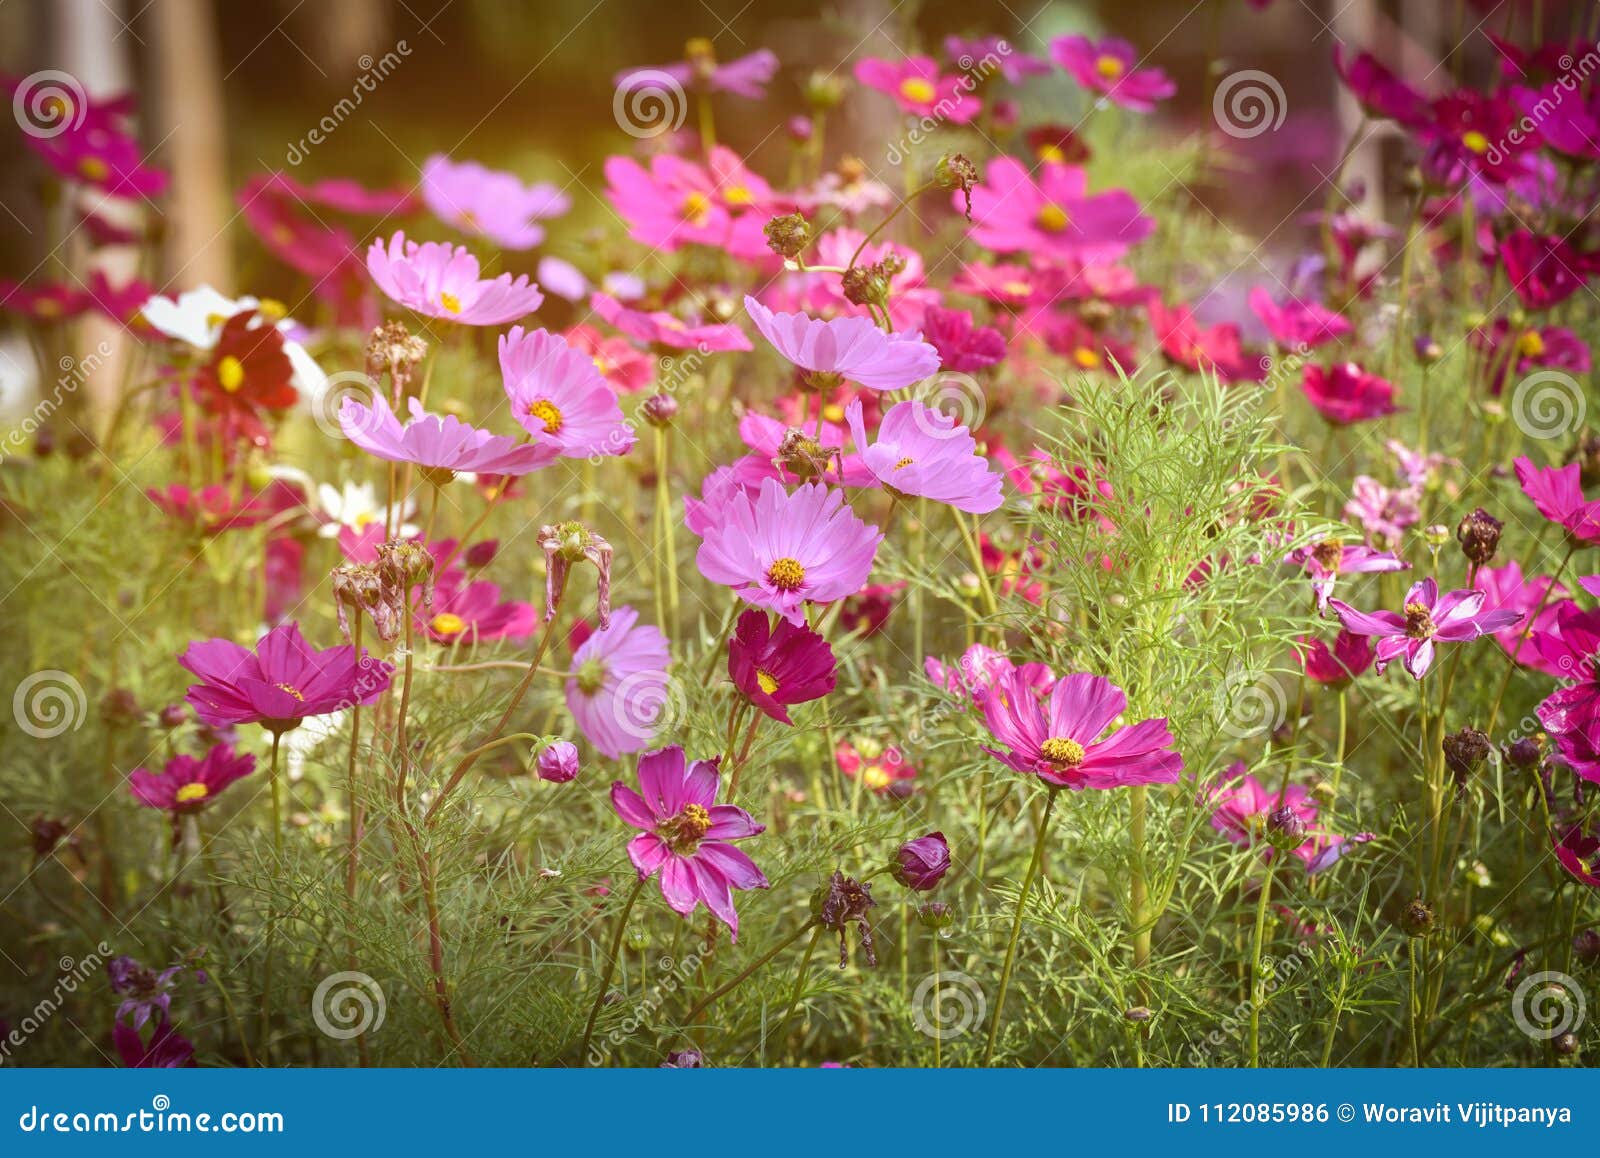 Floraison De Fleurs De Cosmos De Rose De Style De Vintage Photo stock -  Image du temps, fleur: 112085986